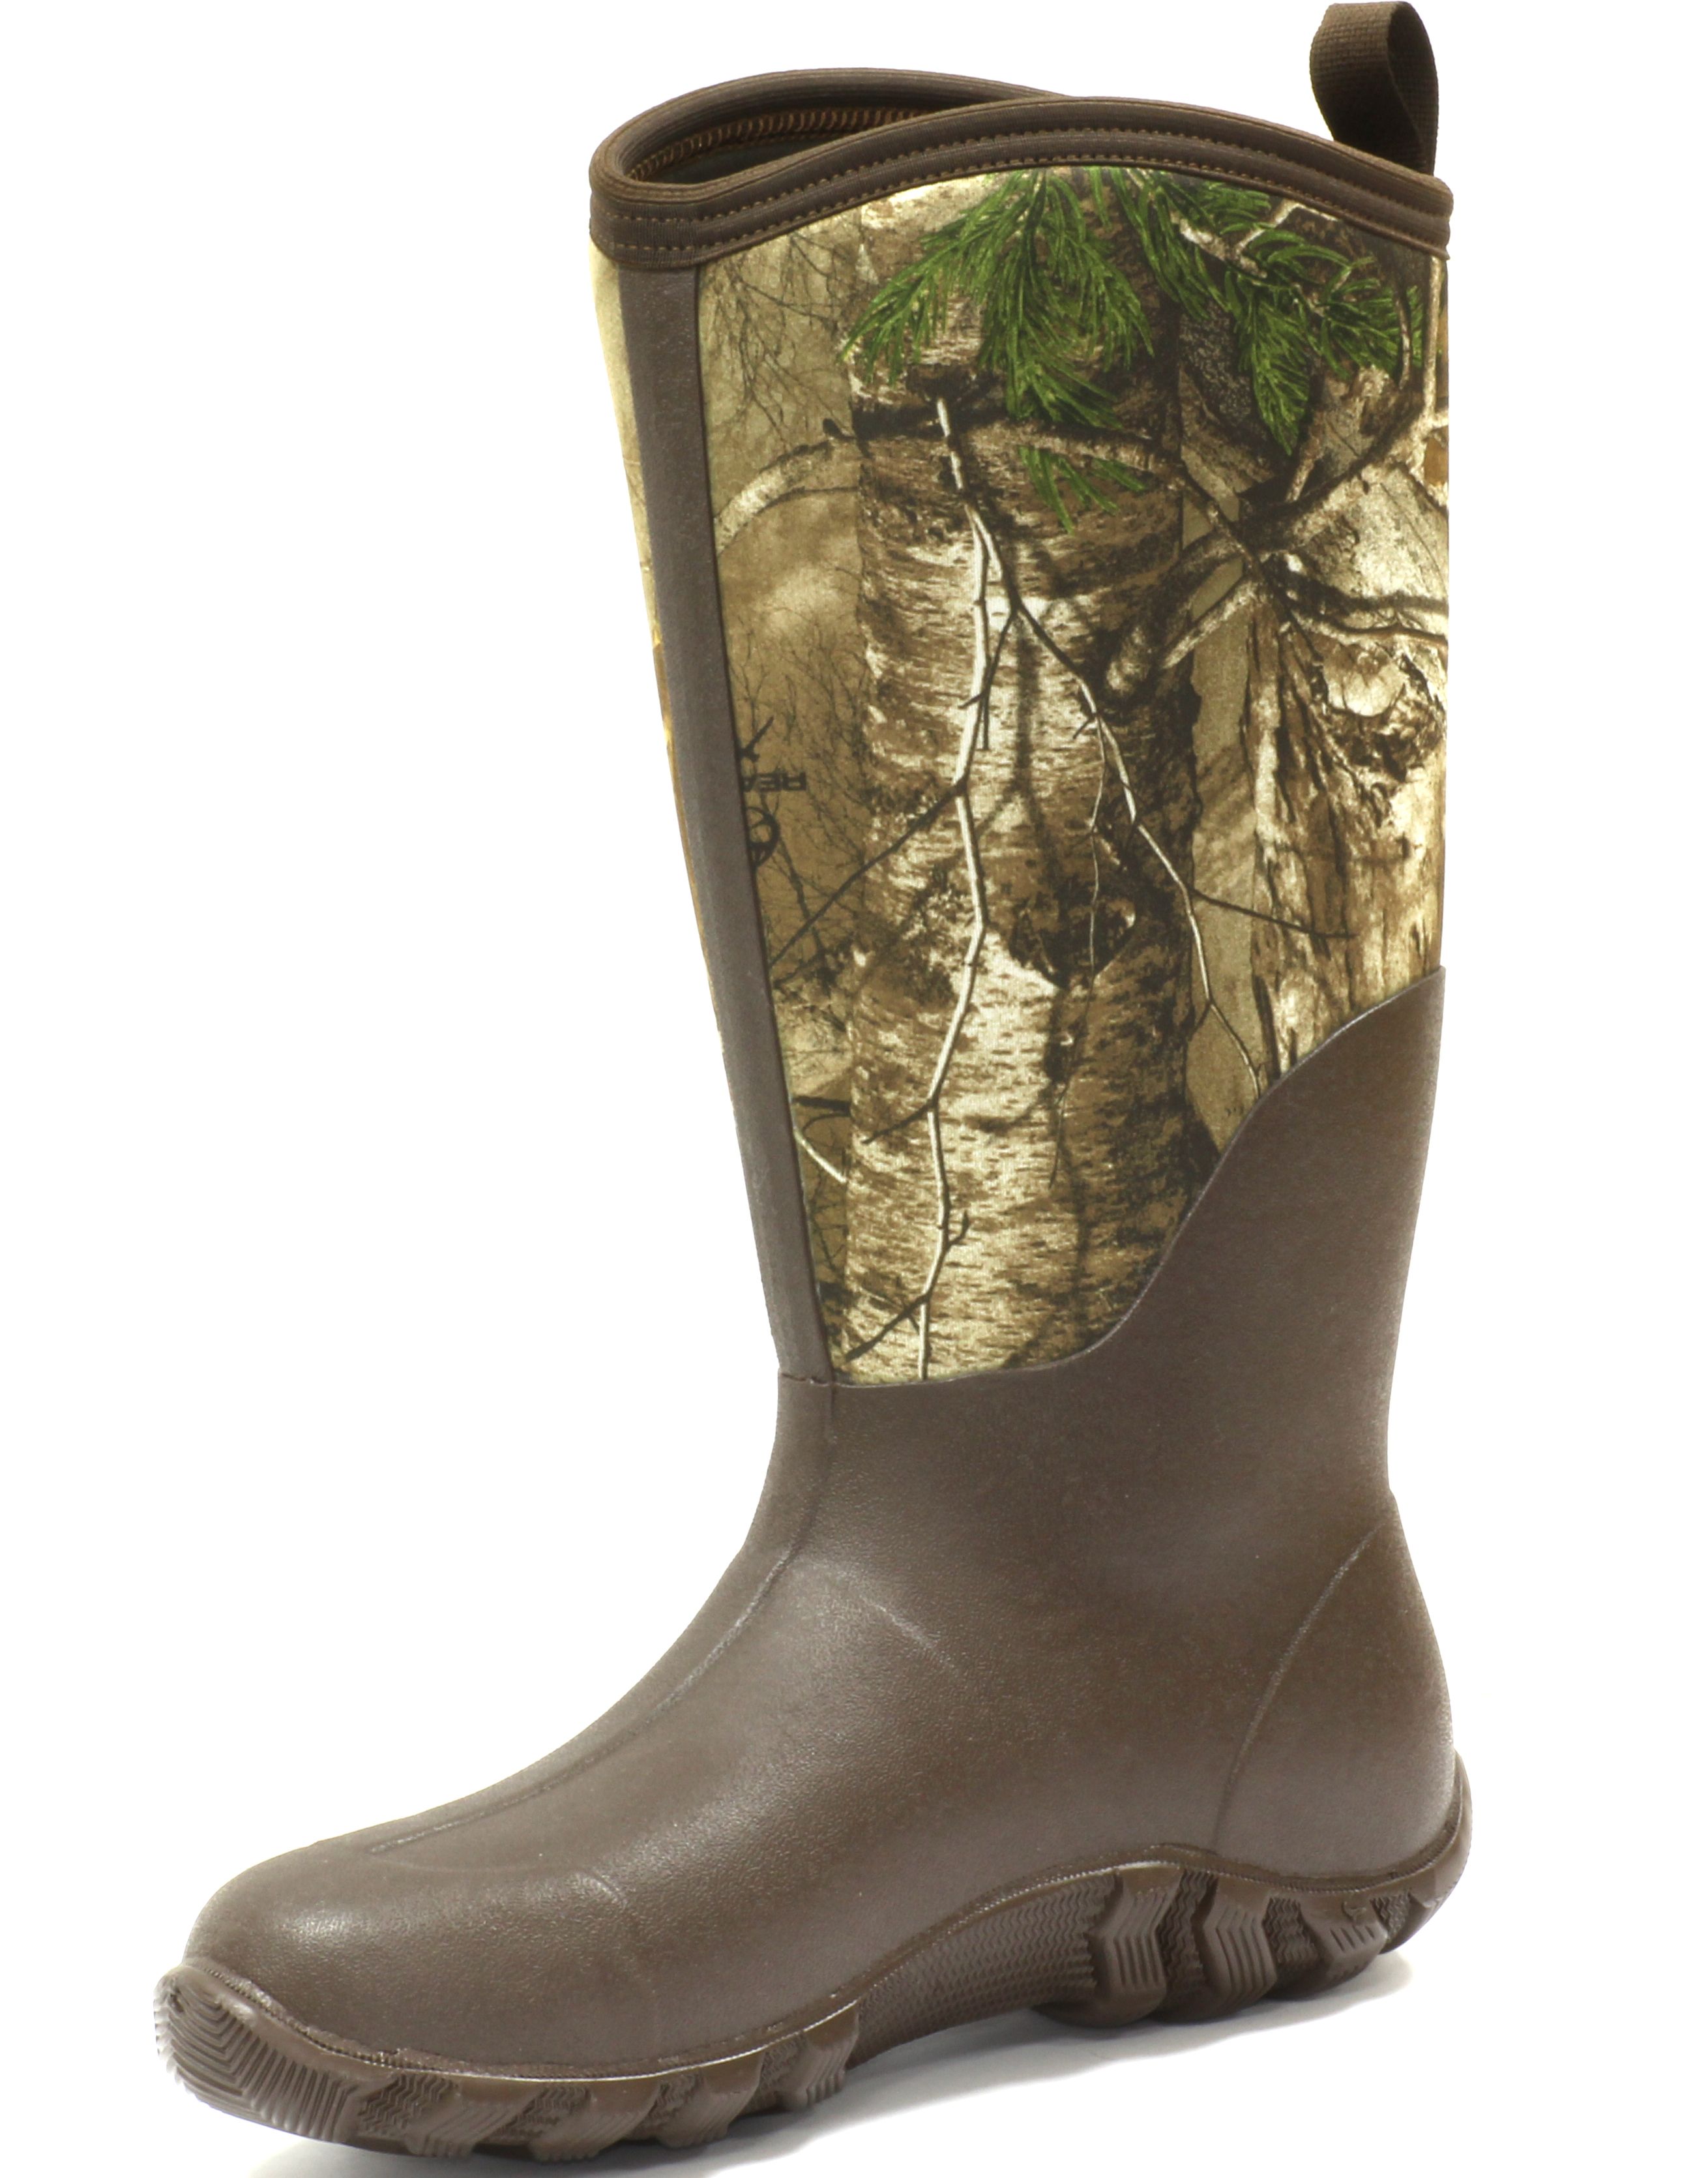 Изображение 1 : Сапоги Muck Boots - лучшая обувь для межсезонья